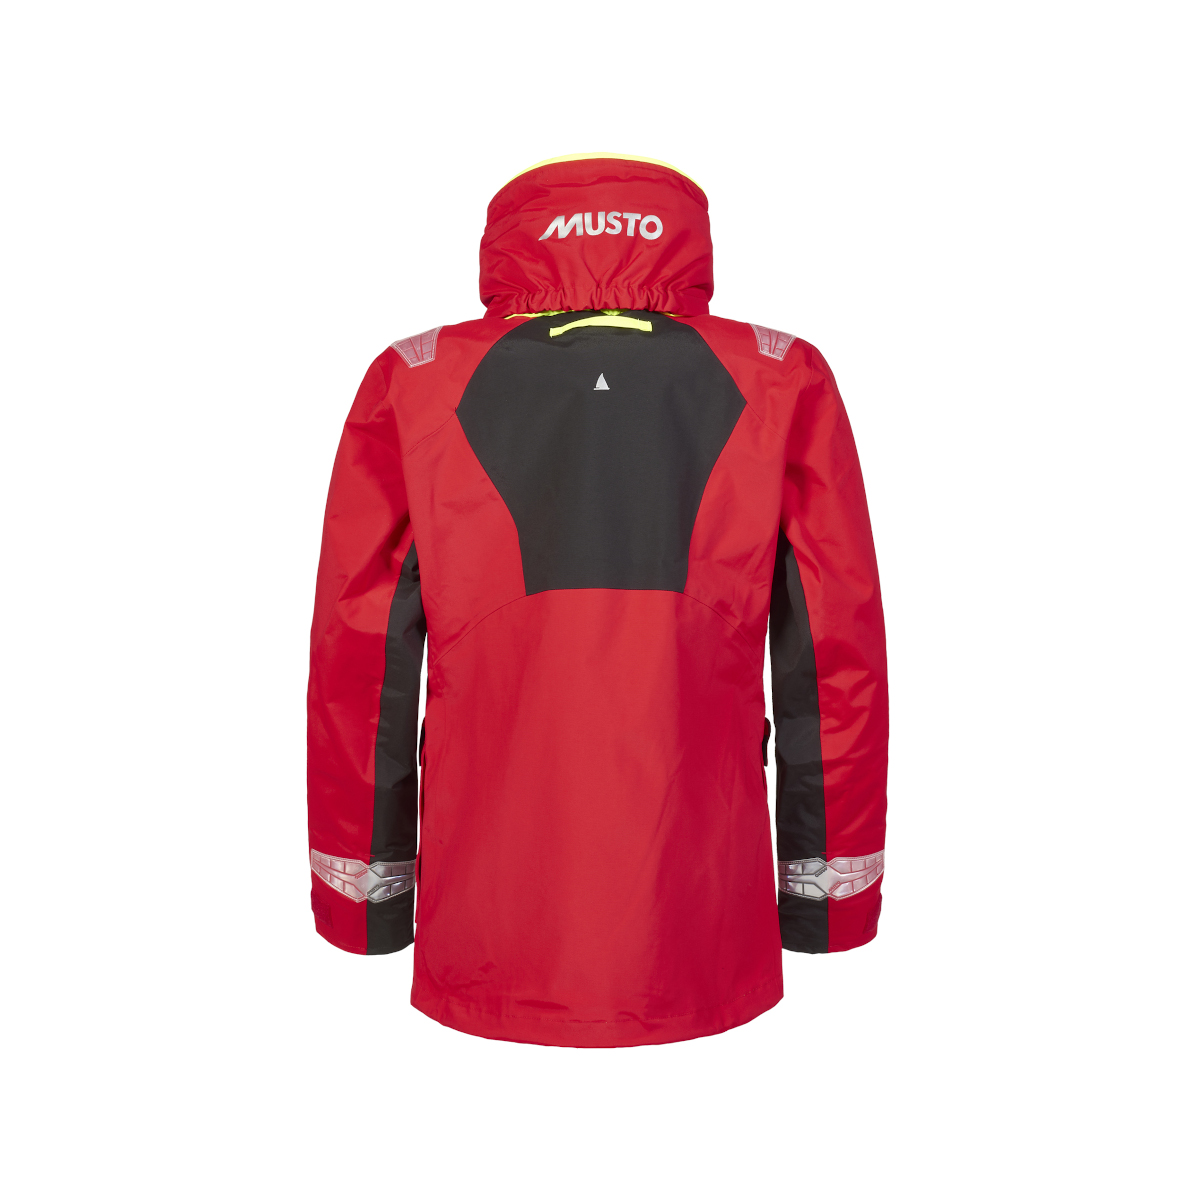 Musto BR2 veste de voile Offshore 2.0 femme rouge, taille 16